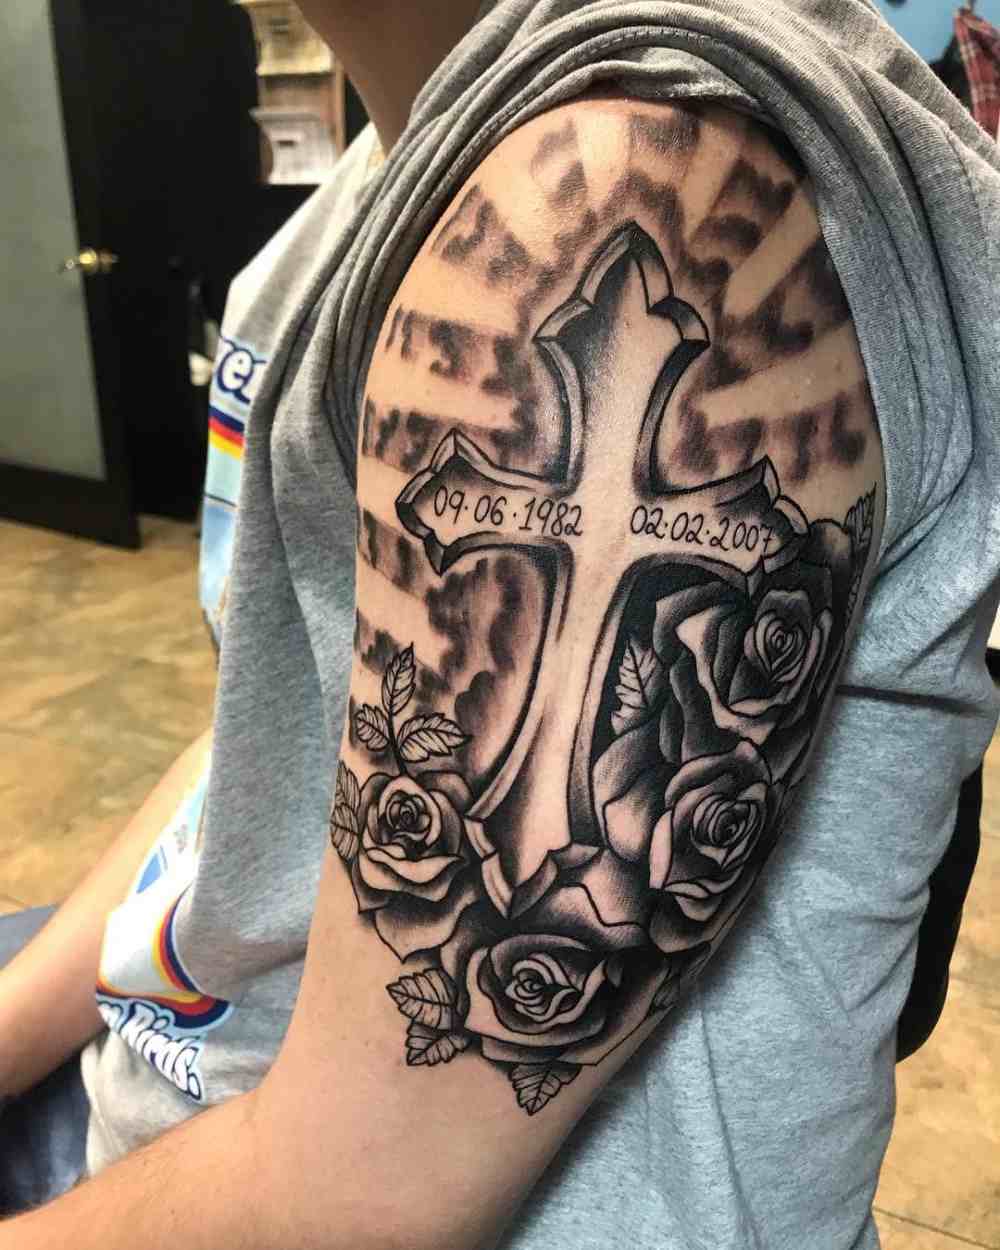 Mann tattoo oberarm Oberarm Tattoo